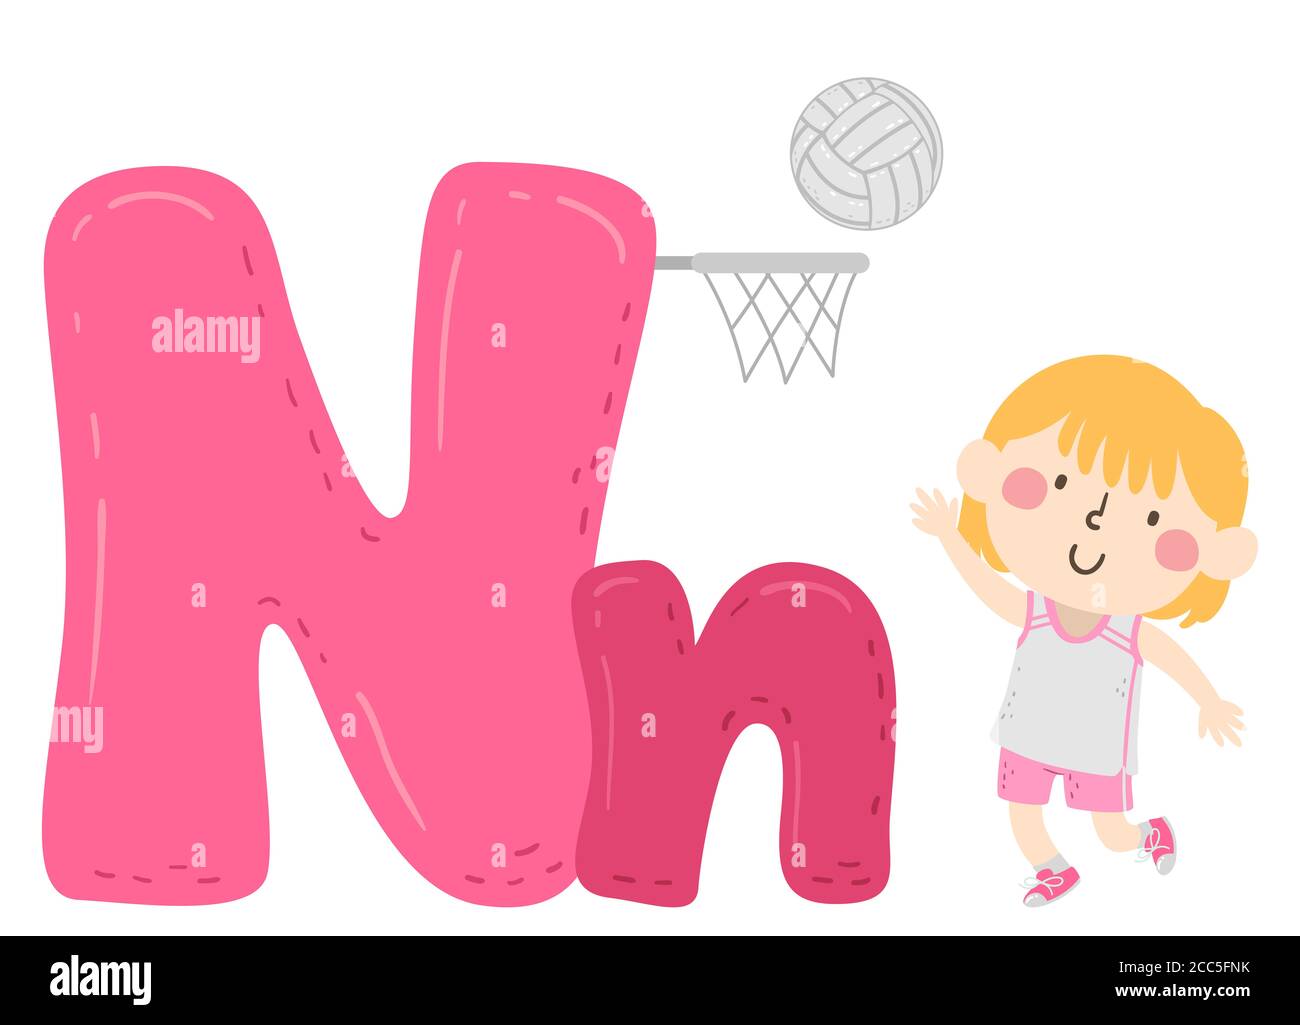 Illustration von einem Kind Mädchen werfen Netball auf Korb. Sport-Alphabet Stockfoto